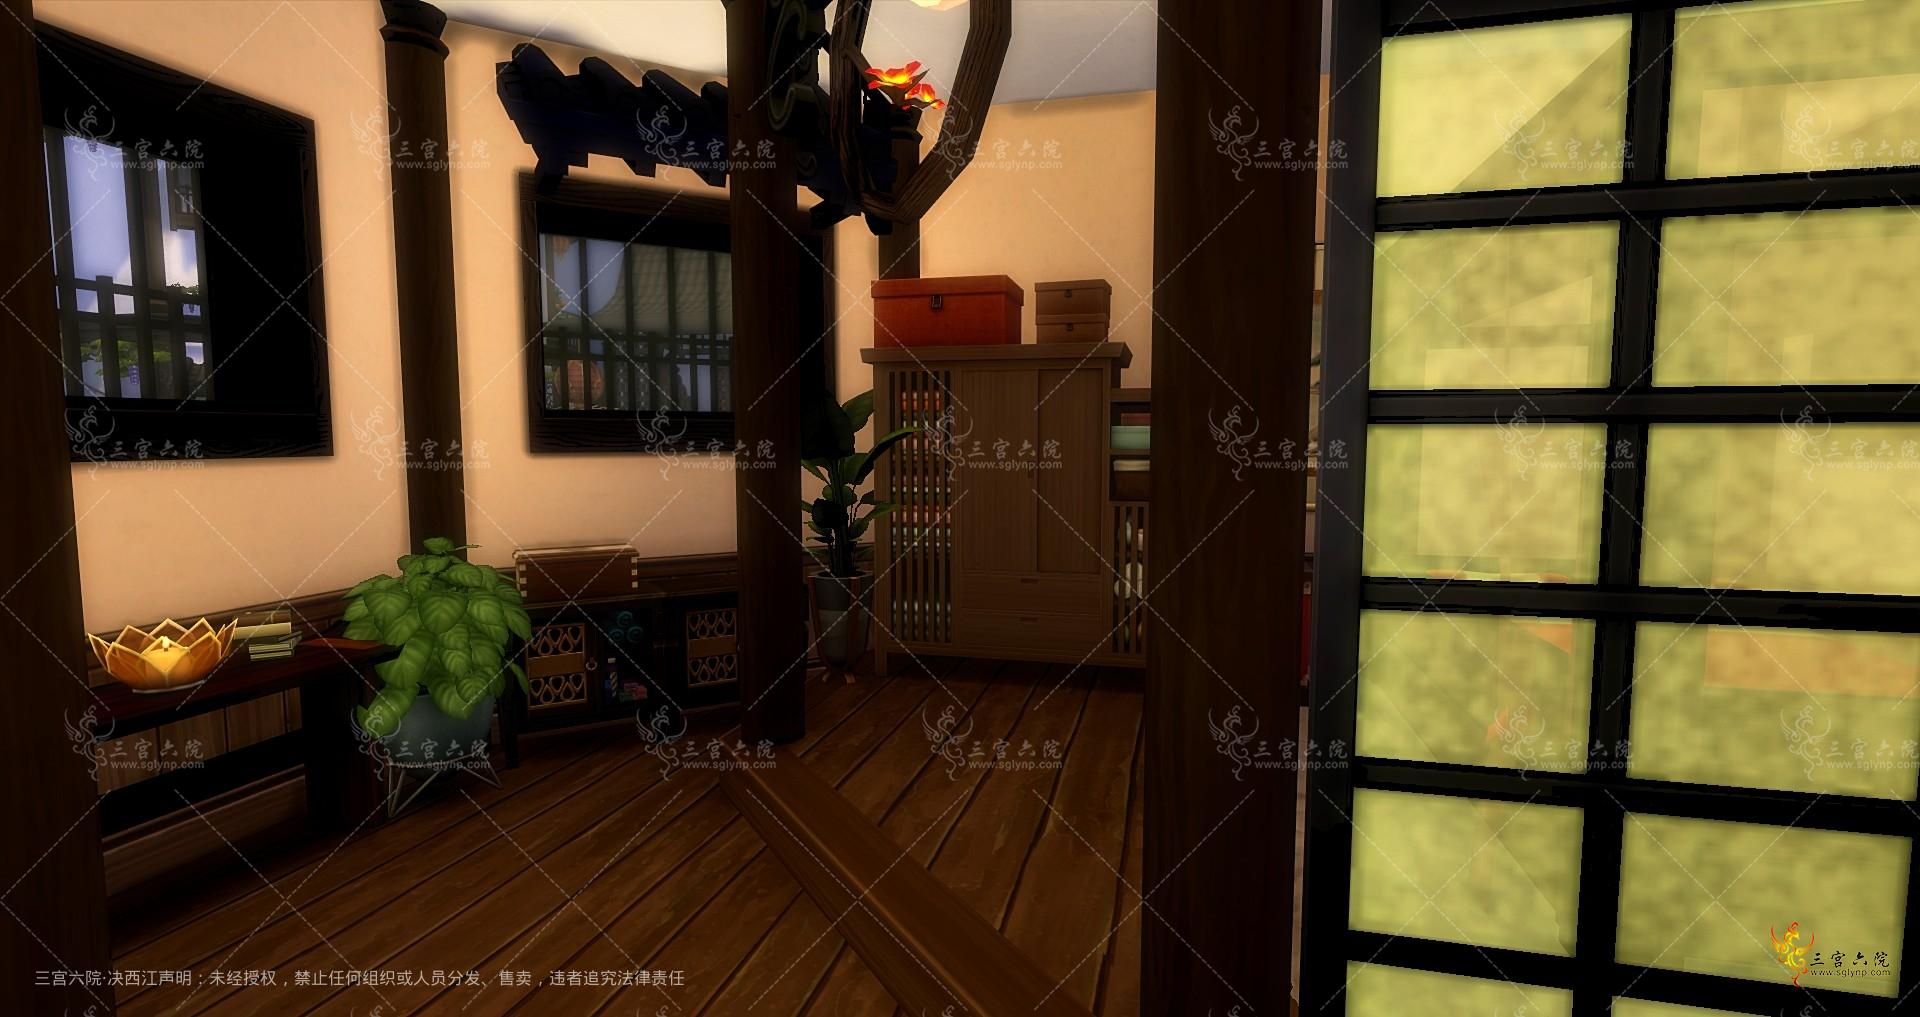 Sims 4 Screenshot 2023.02.25 - 19.05.56.54.png